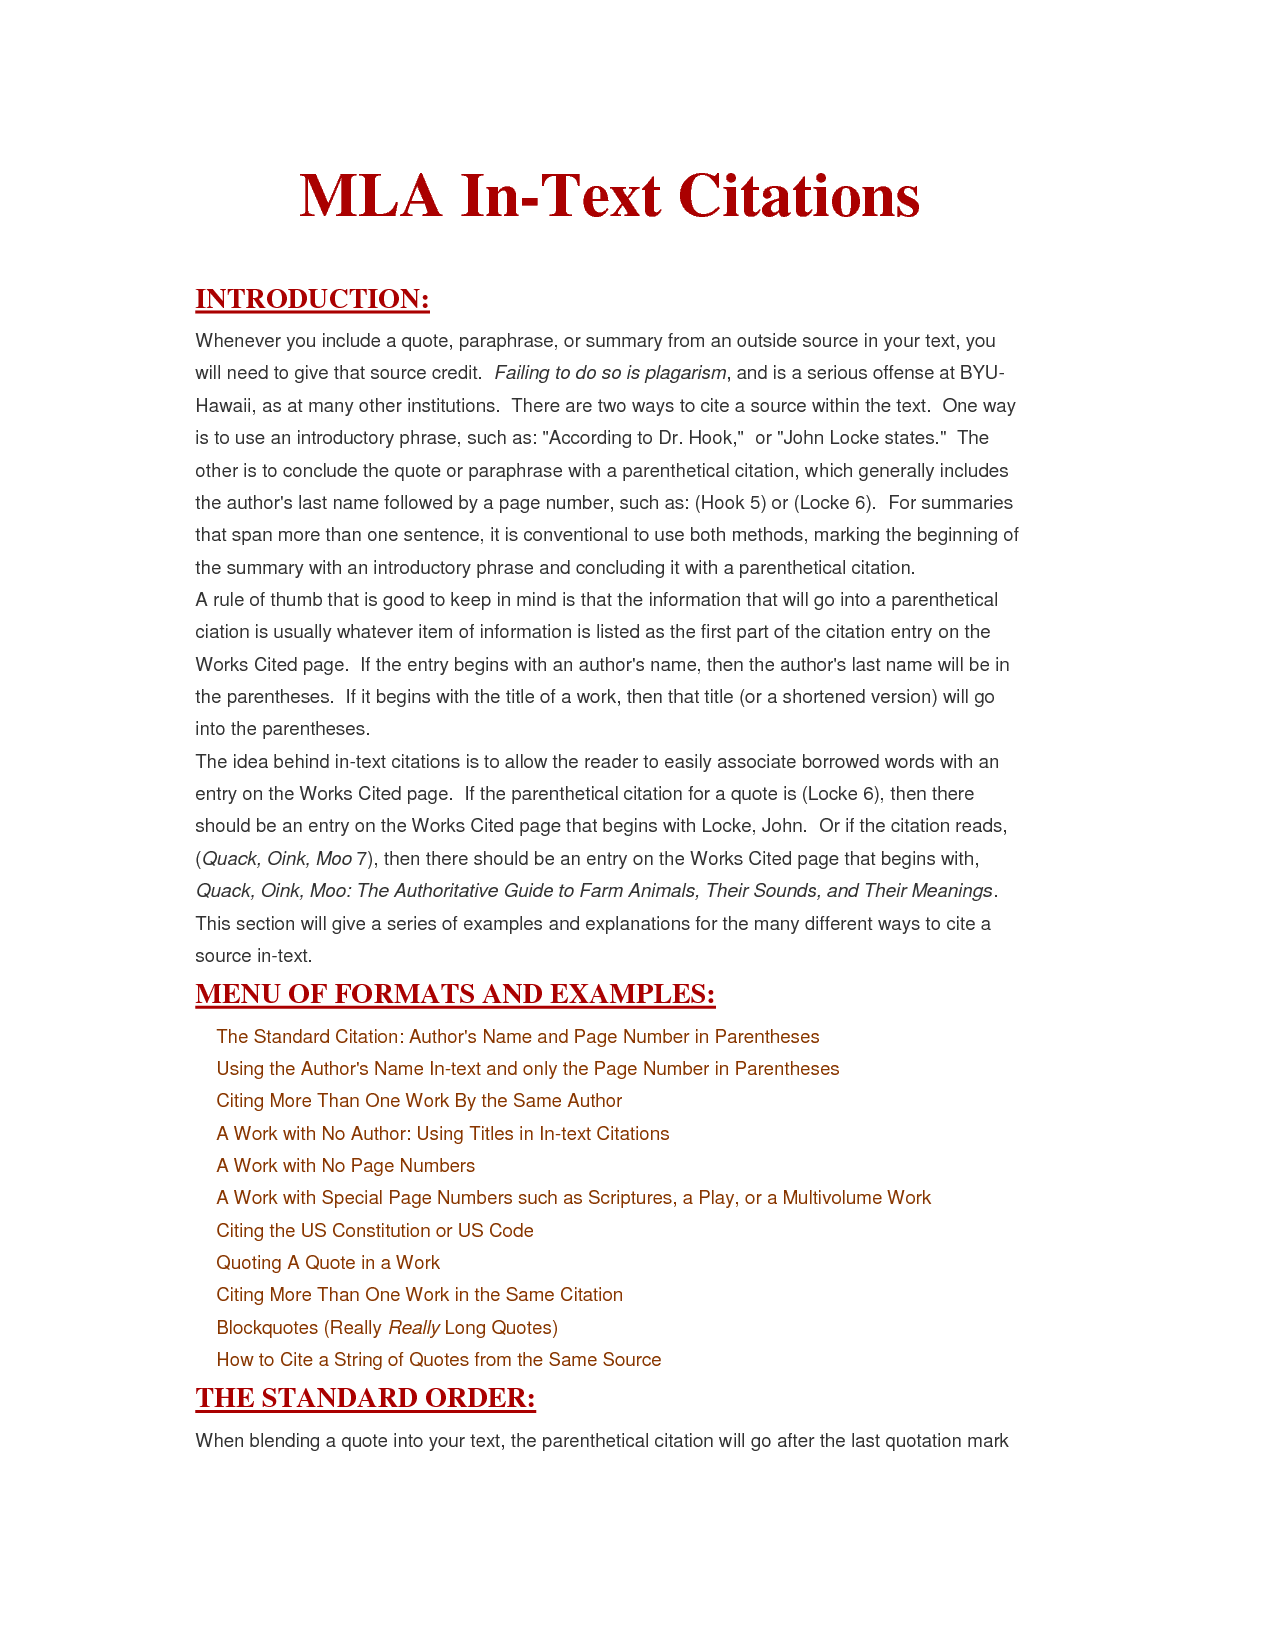 "apa documentation" uw madison writing center writers 